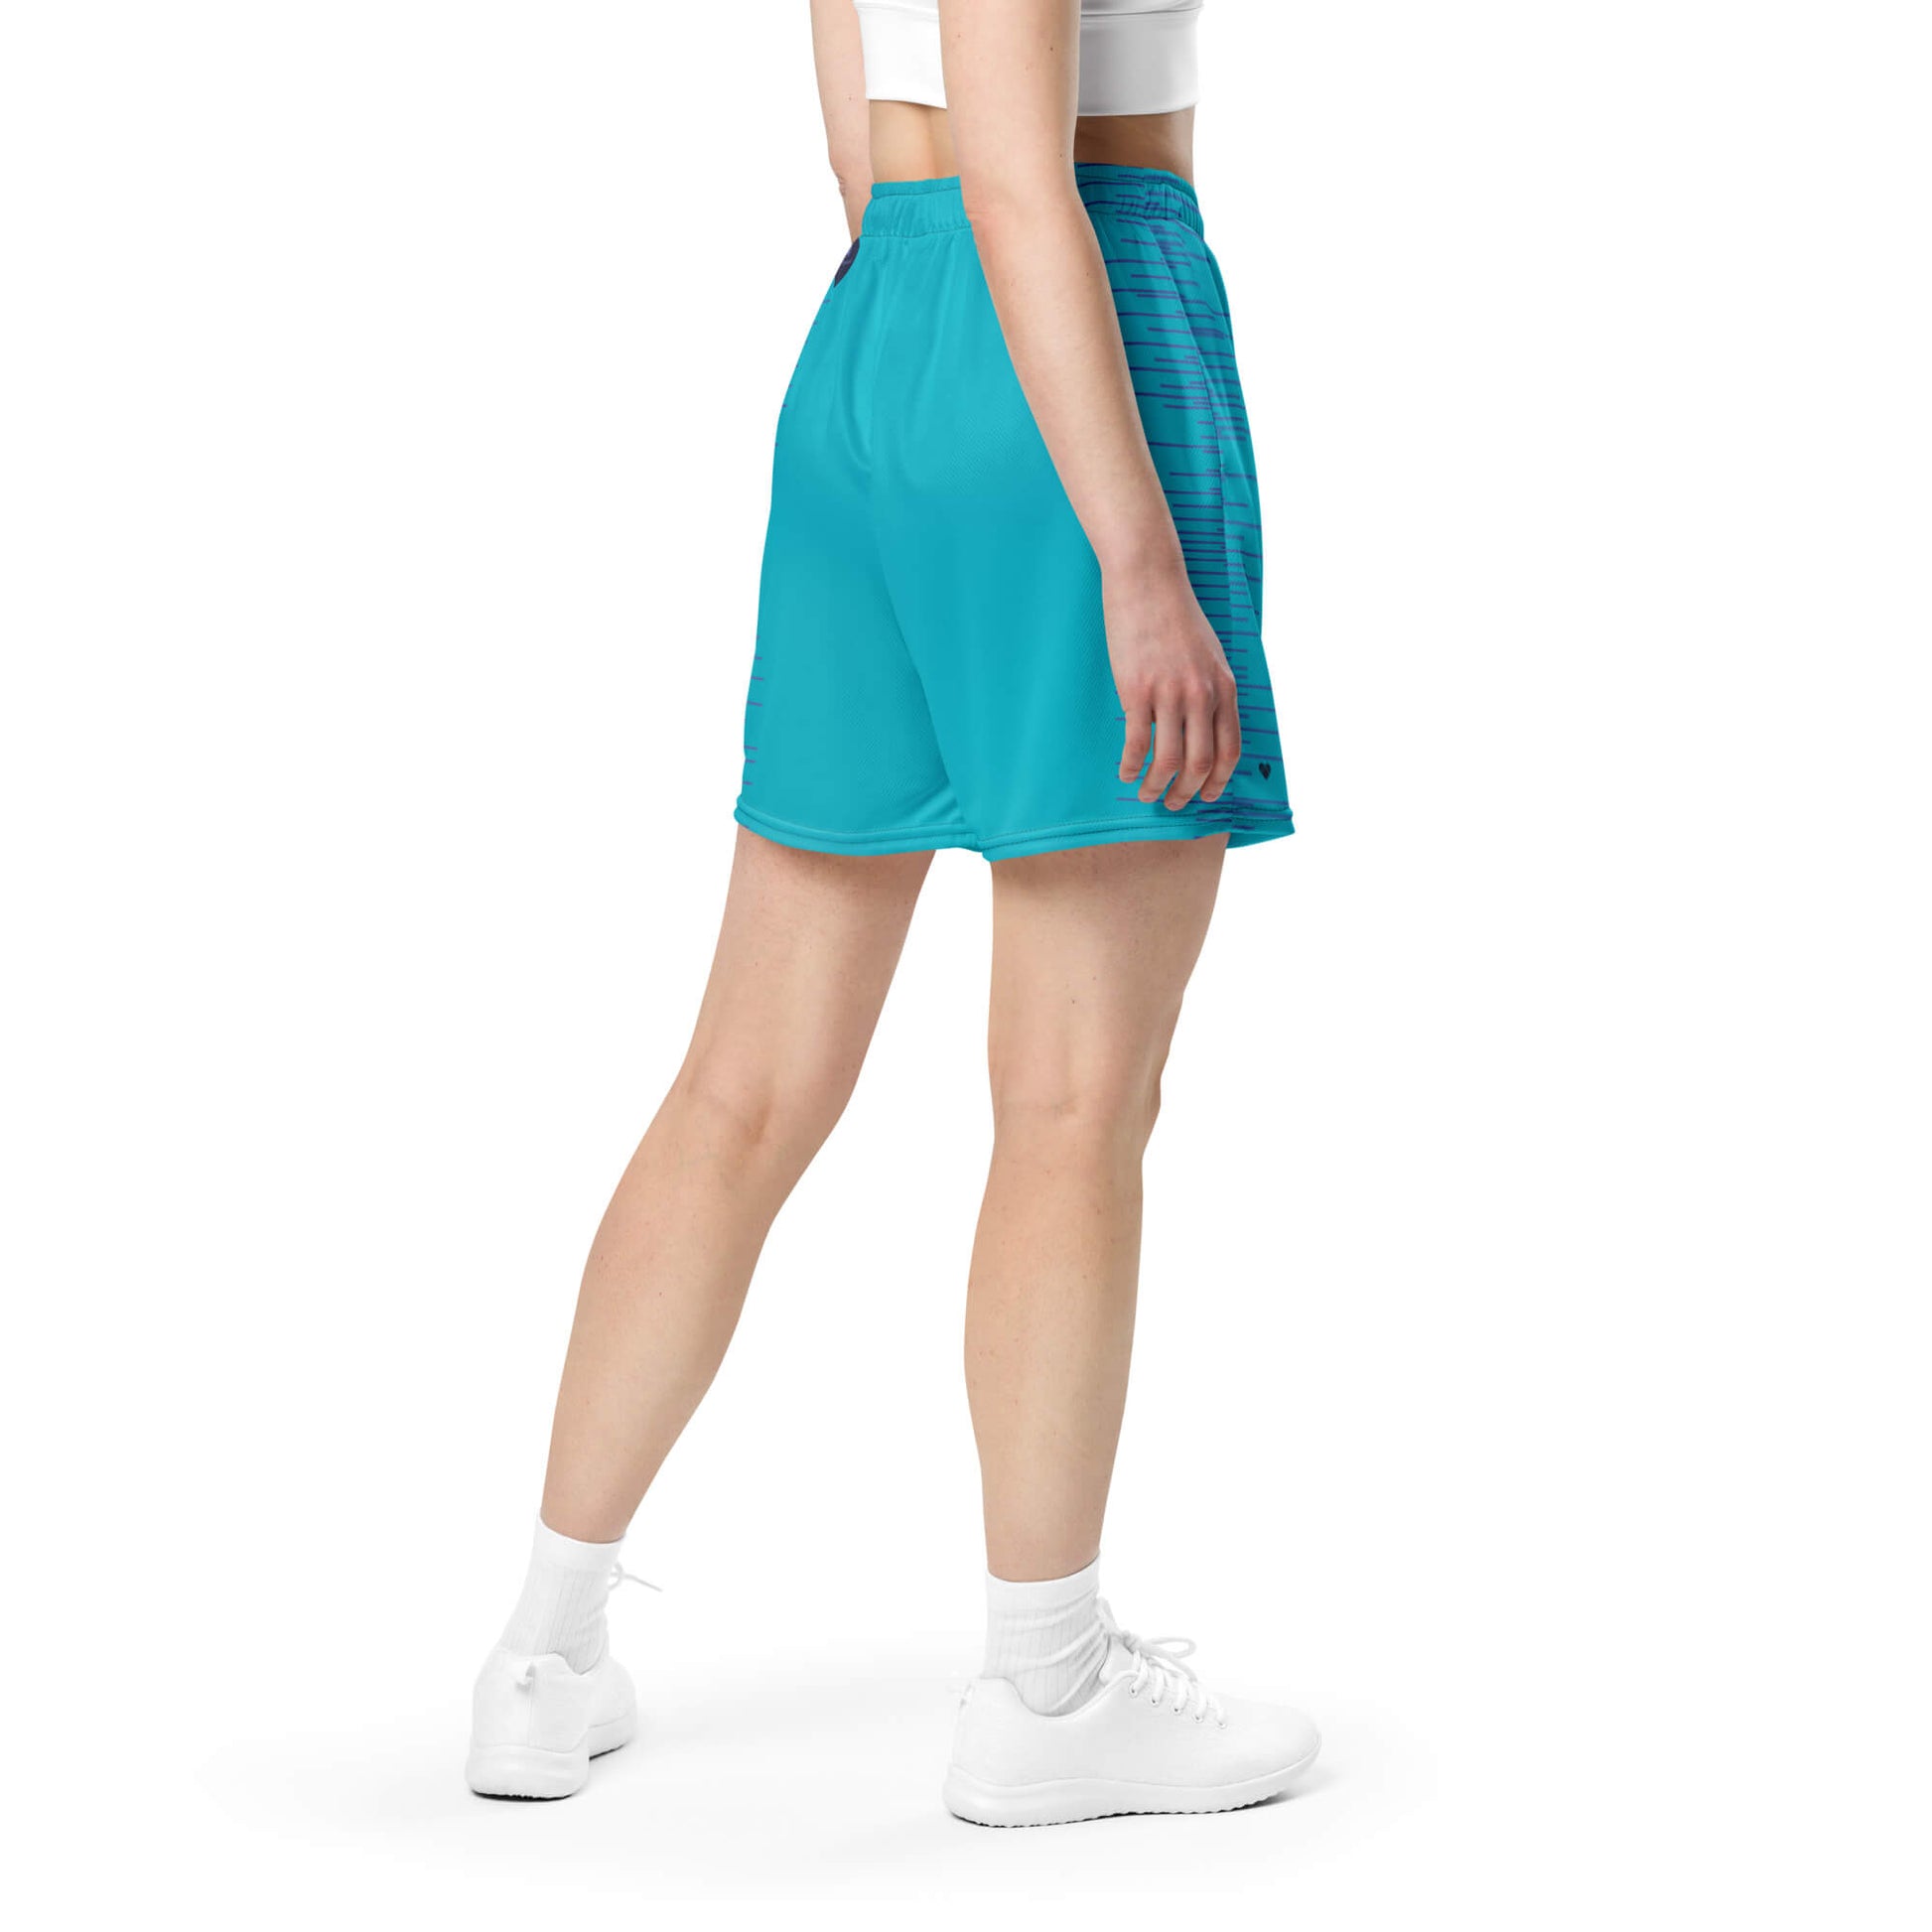 Turquoise Dual Mesh Shorts - Unisex fashion by CRiZ AMOR